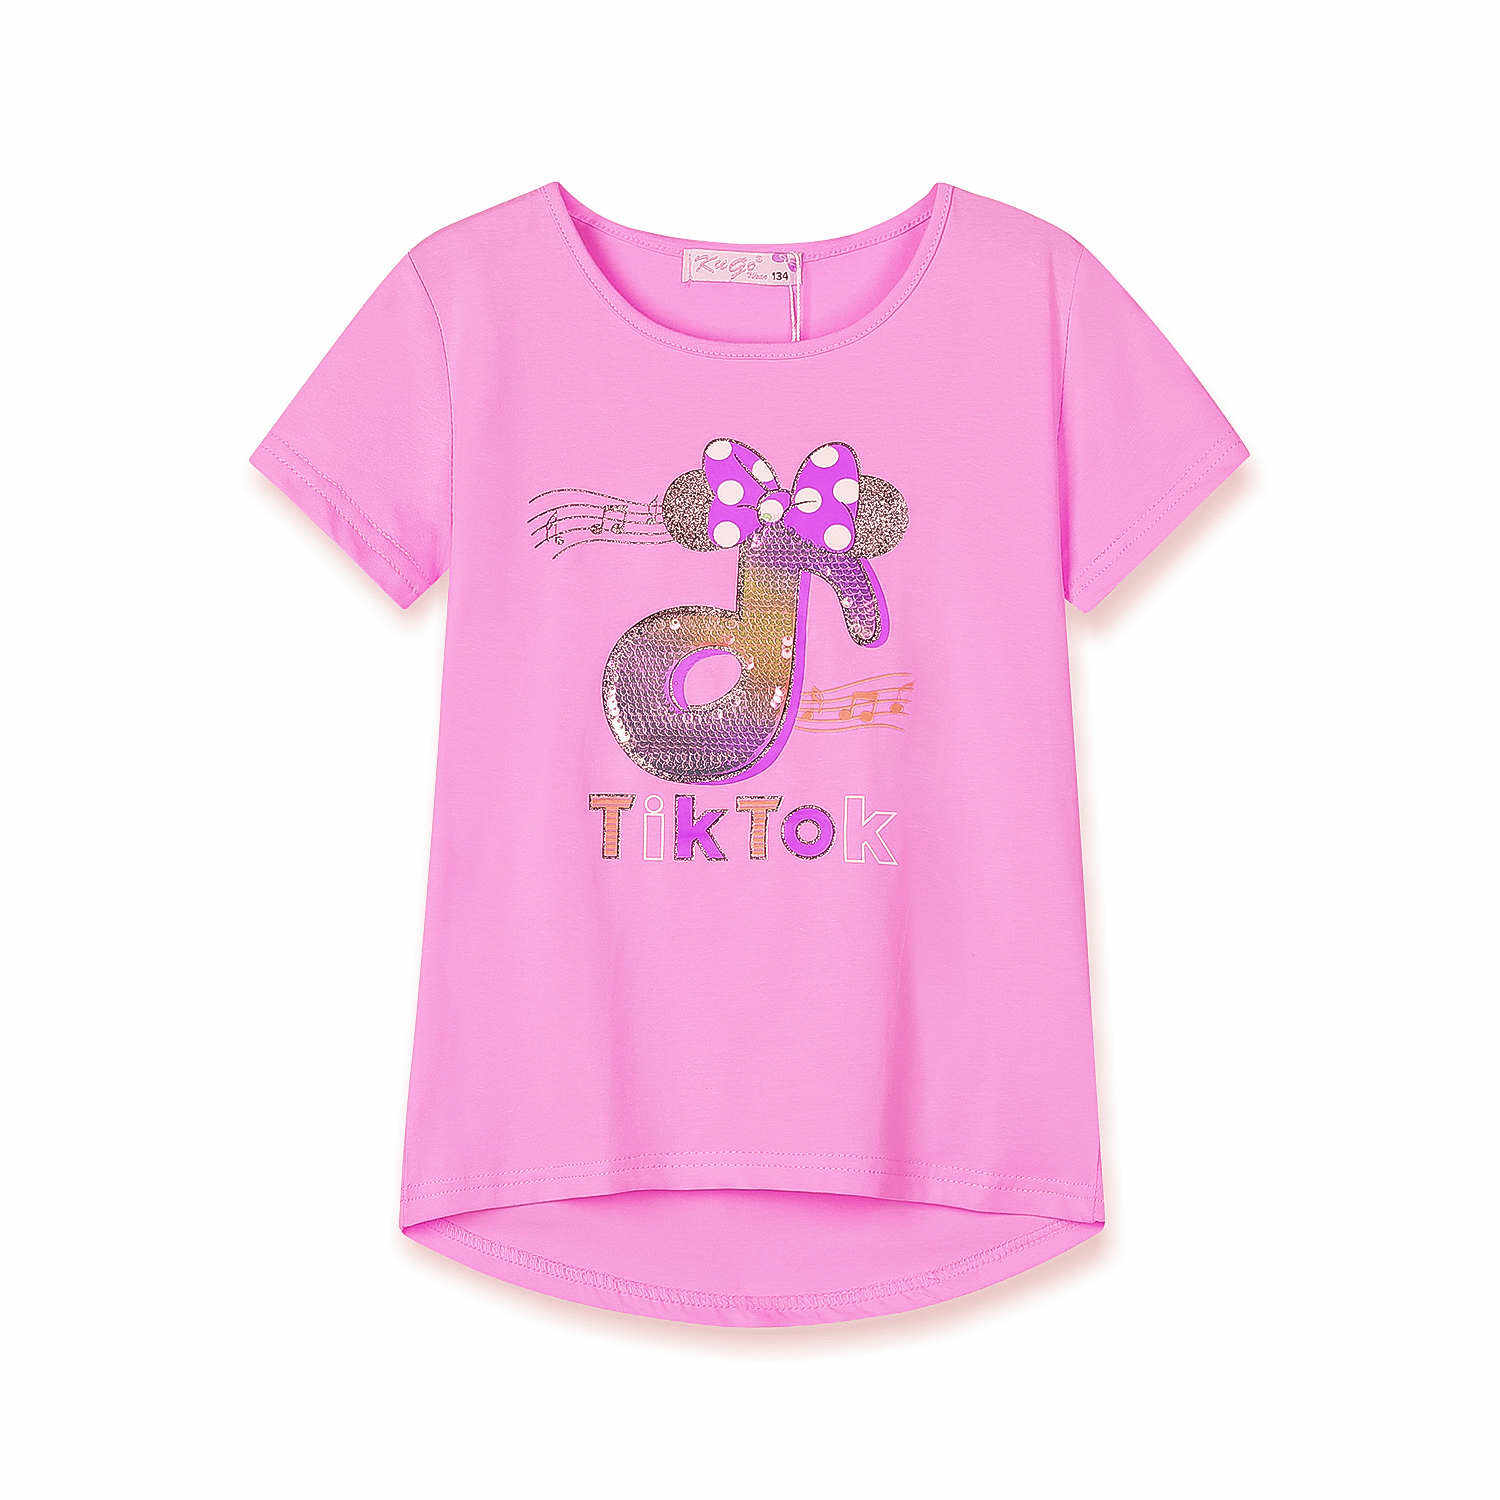 Dívčí triko s flitry - KUGO WK0803, světle růžová Barva: Růžová světlejší, Velikost: 122